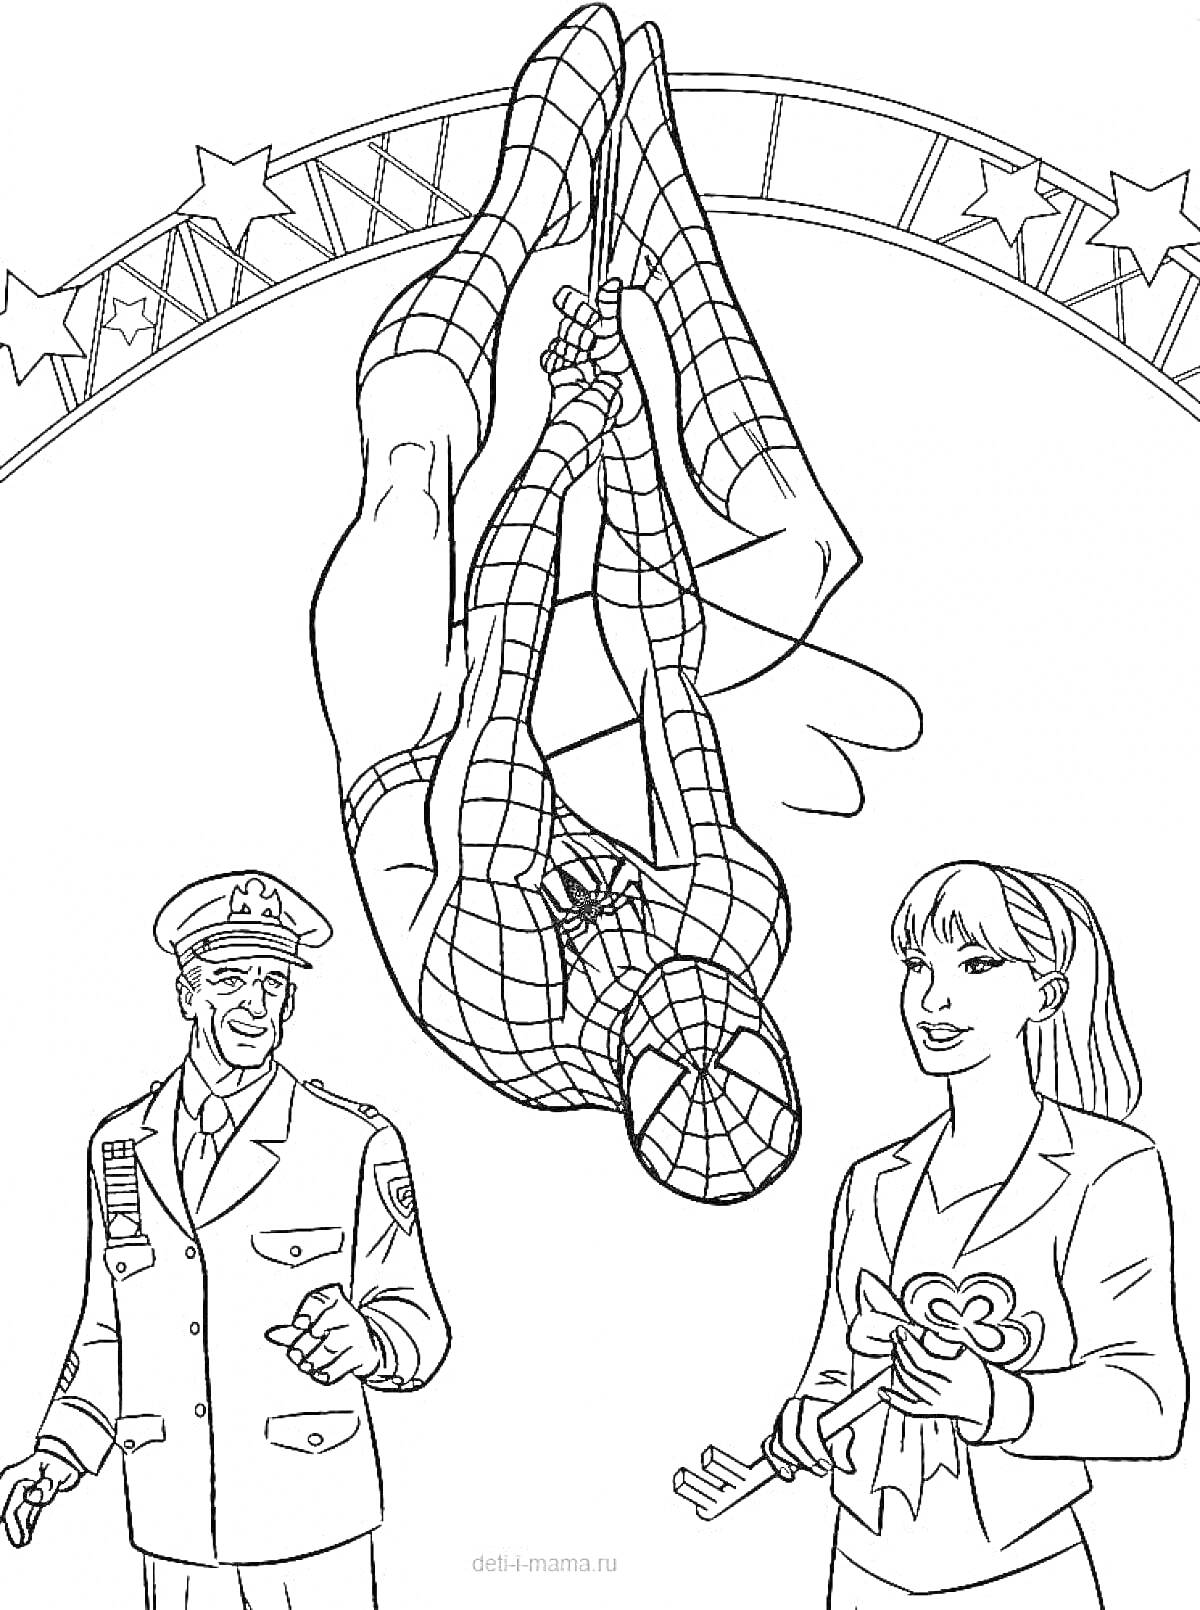 Раскраска Человек-паук, полицейский и женщина под аркой со звездами